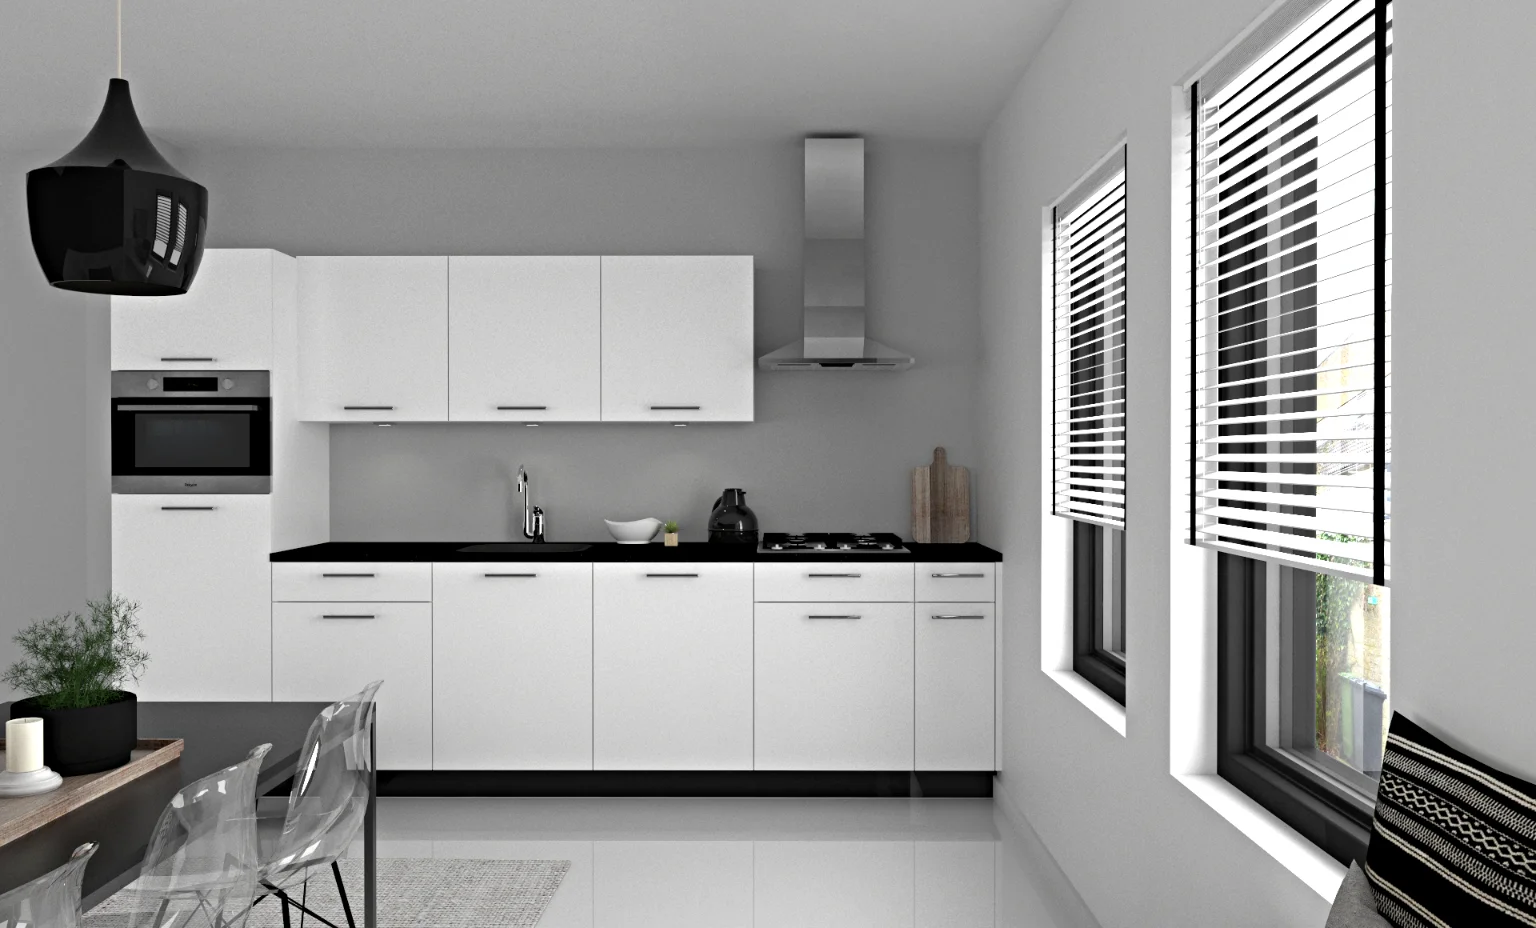 Een zwart witte keuken met eettafel en stoelen om een keukenruimte te huren.